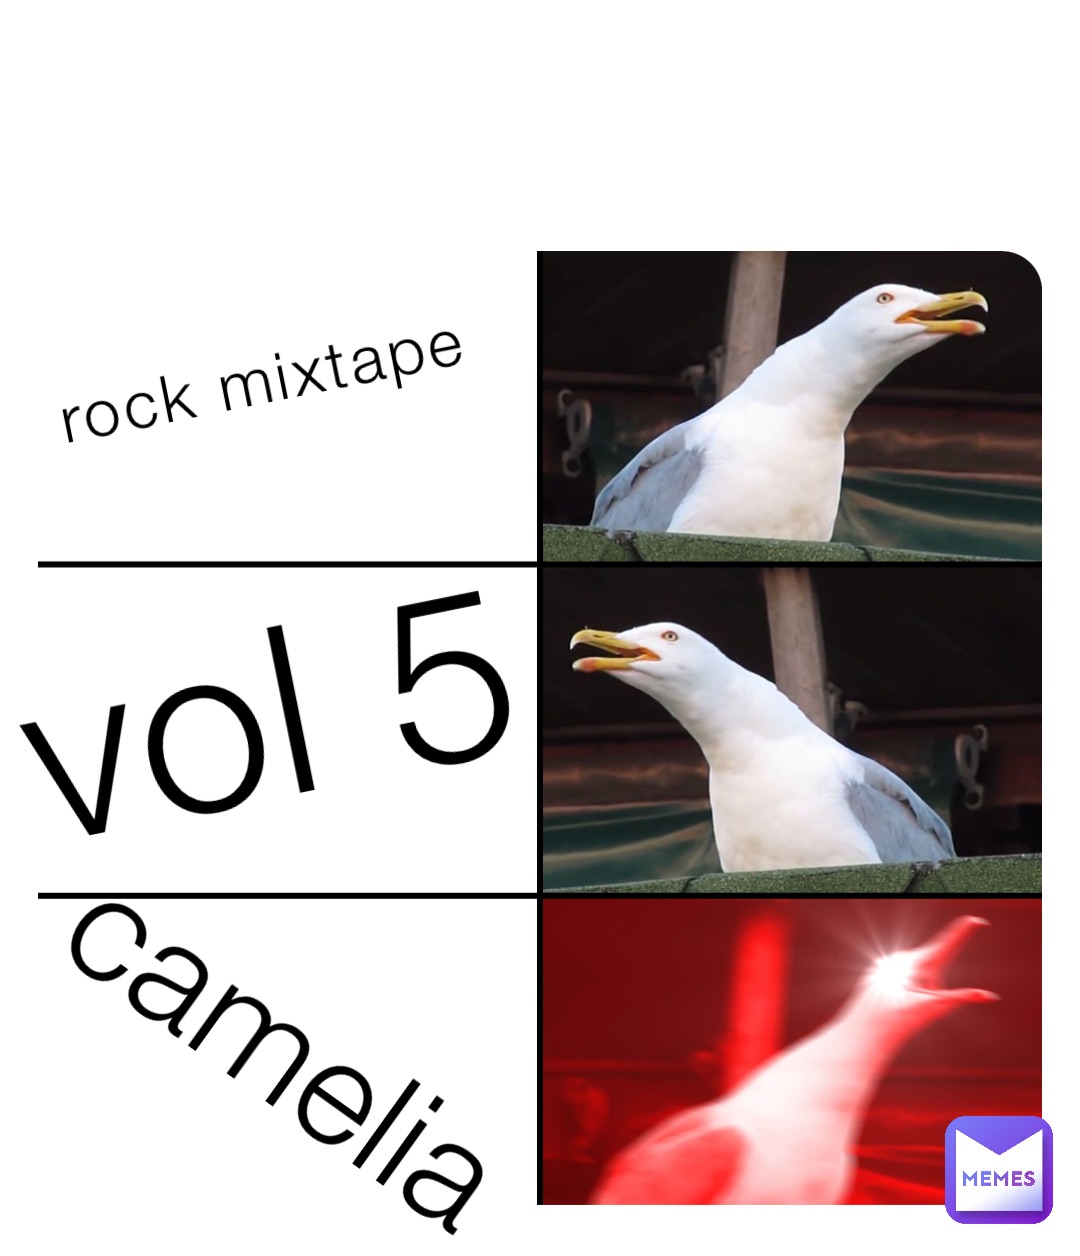 rock mixtape vol 5 camelia